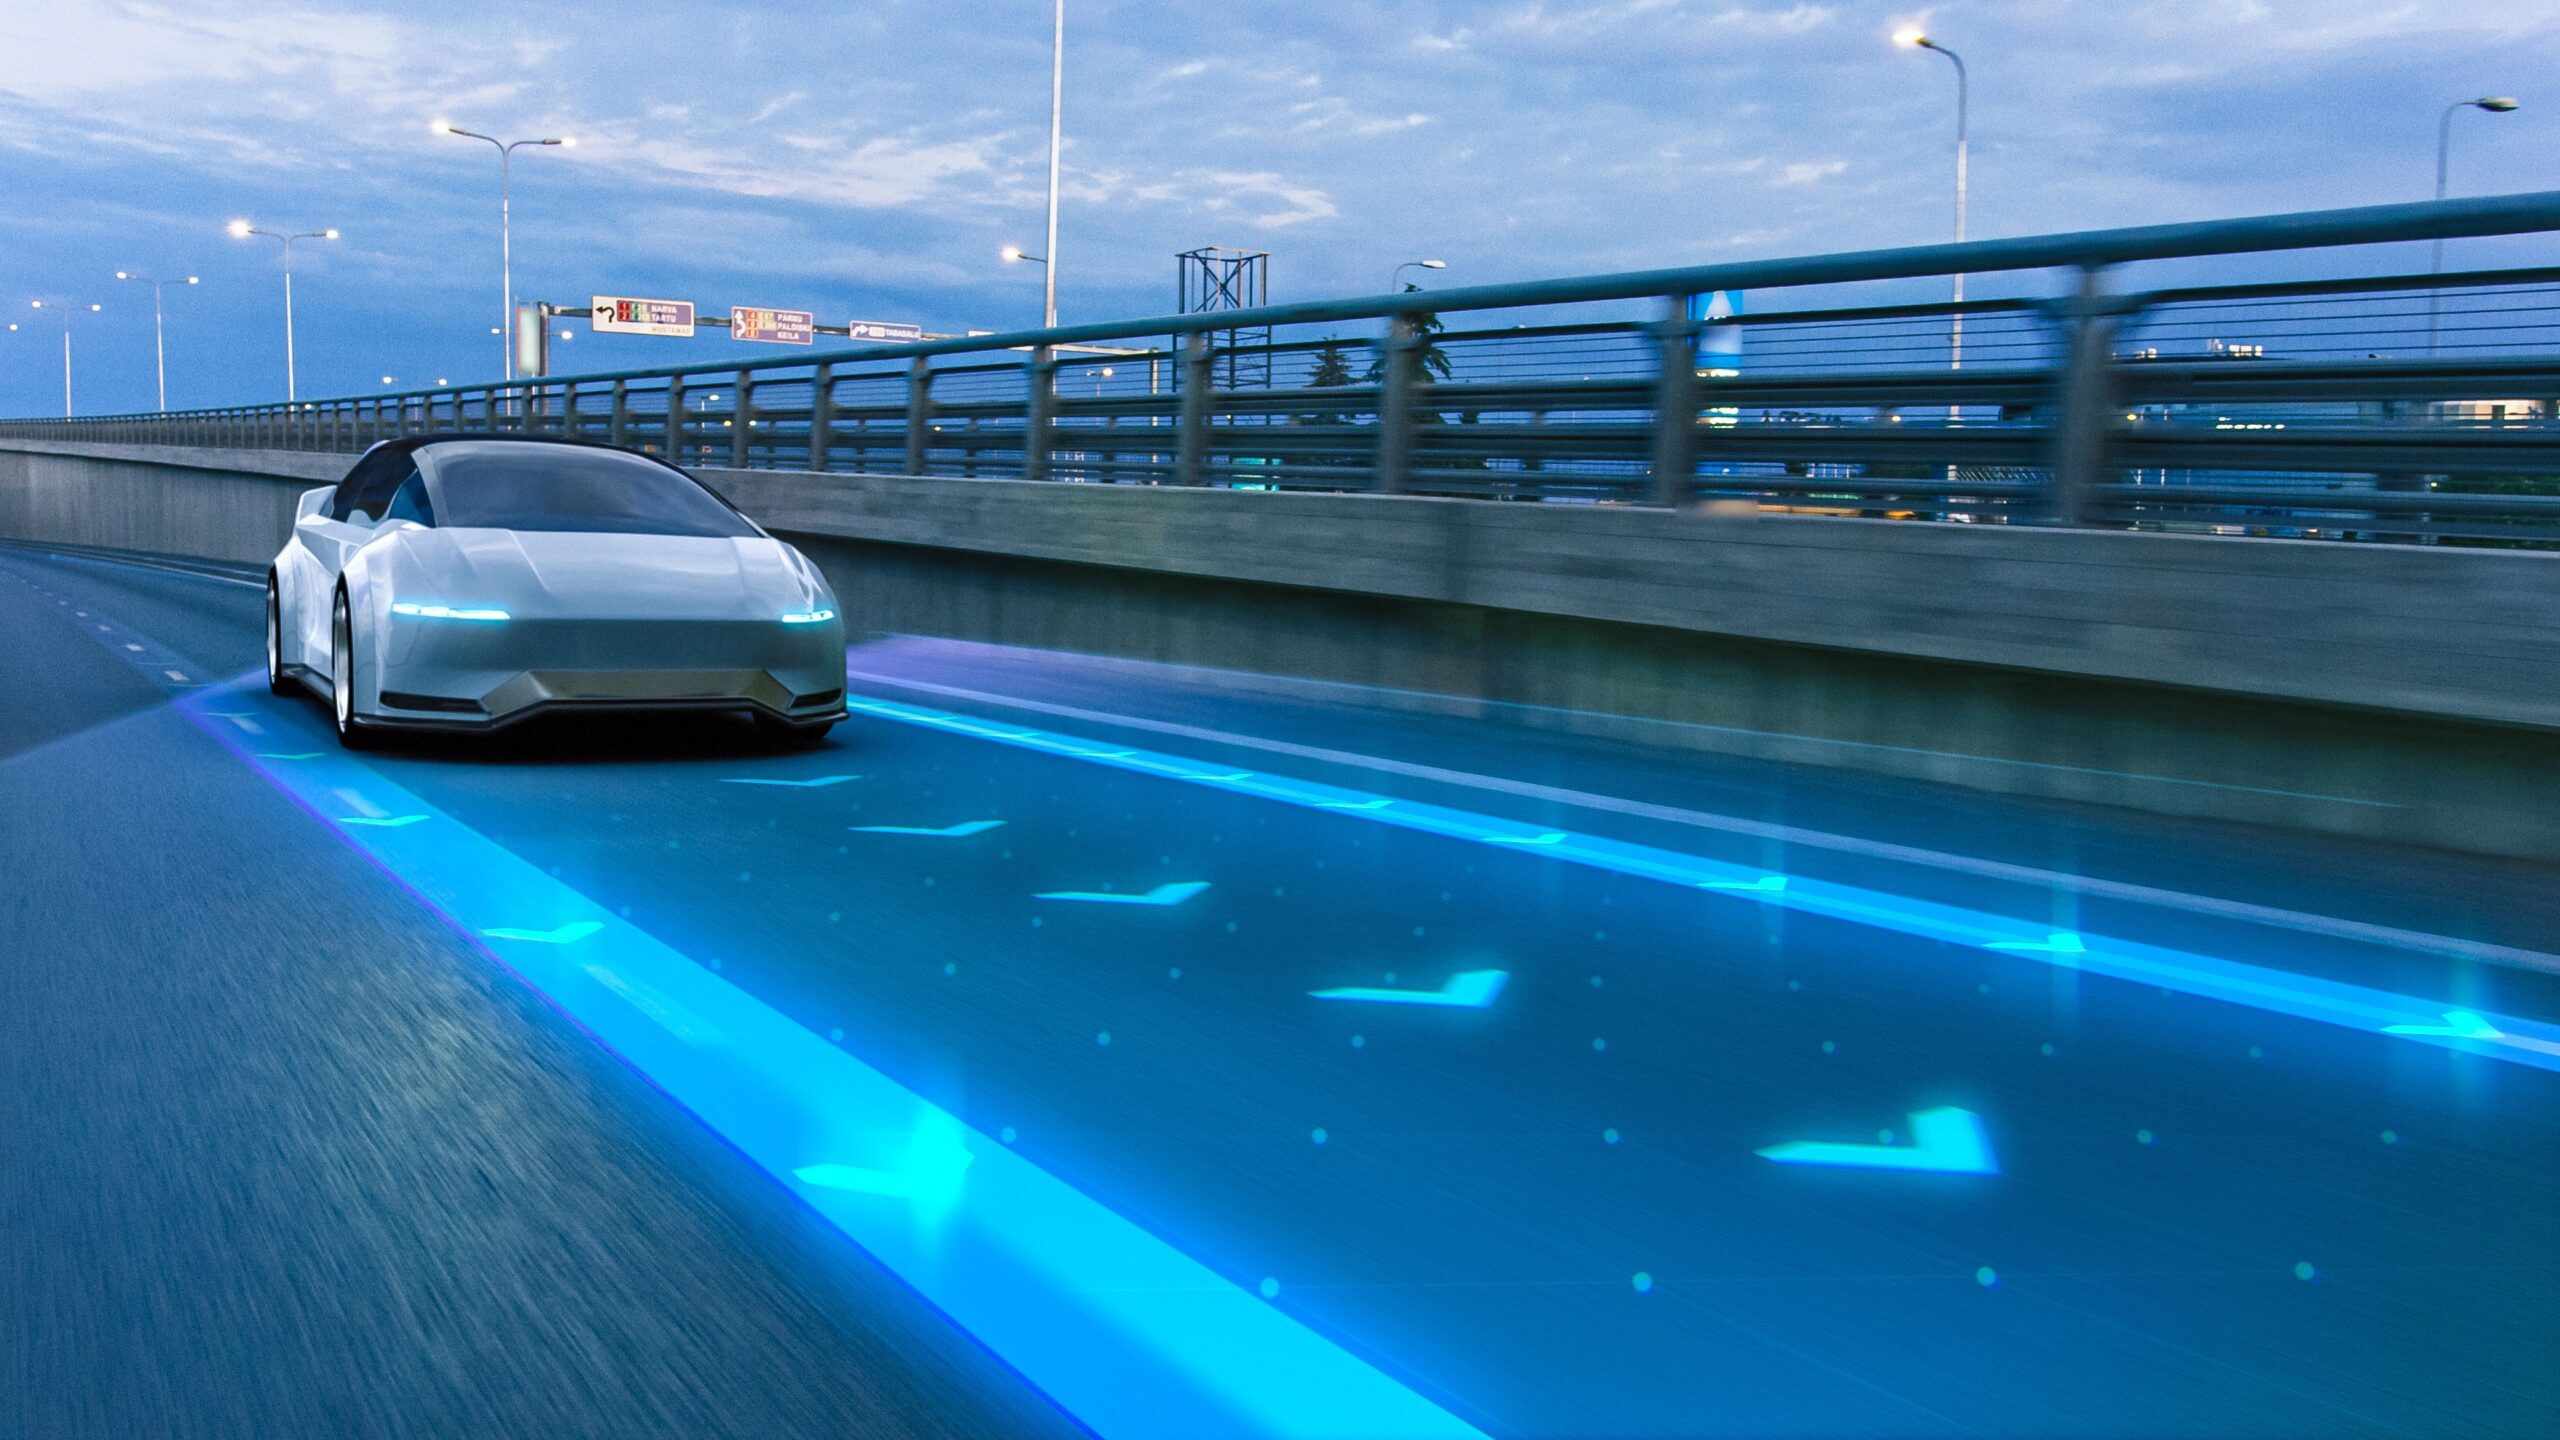 Autonomous,Self-driving car mock up